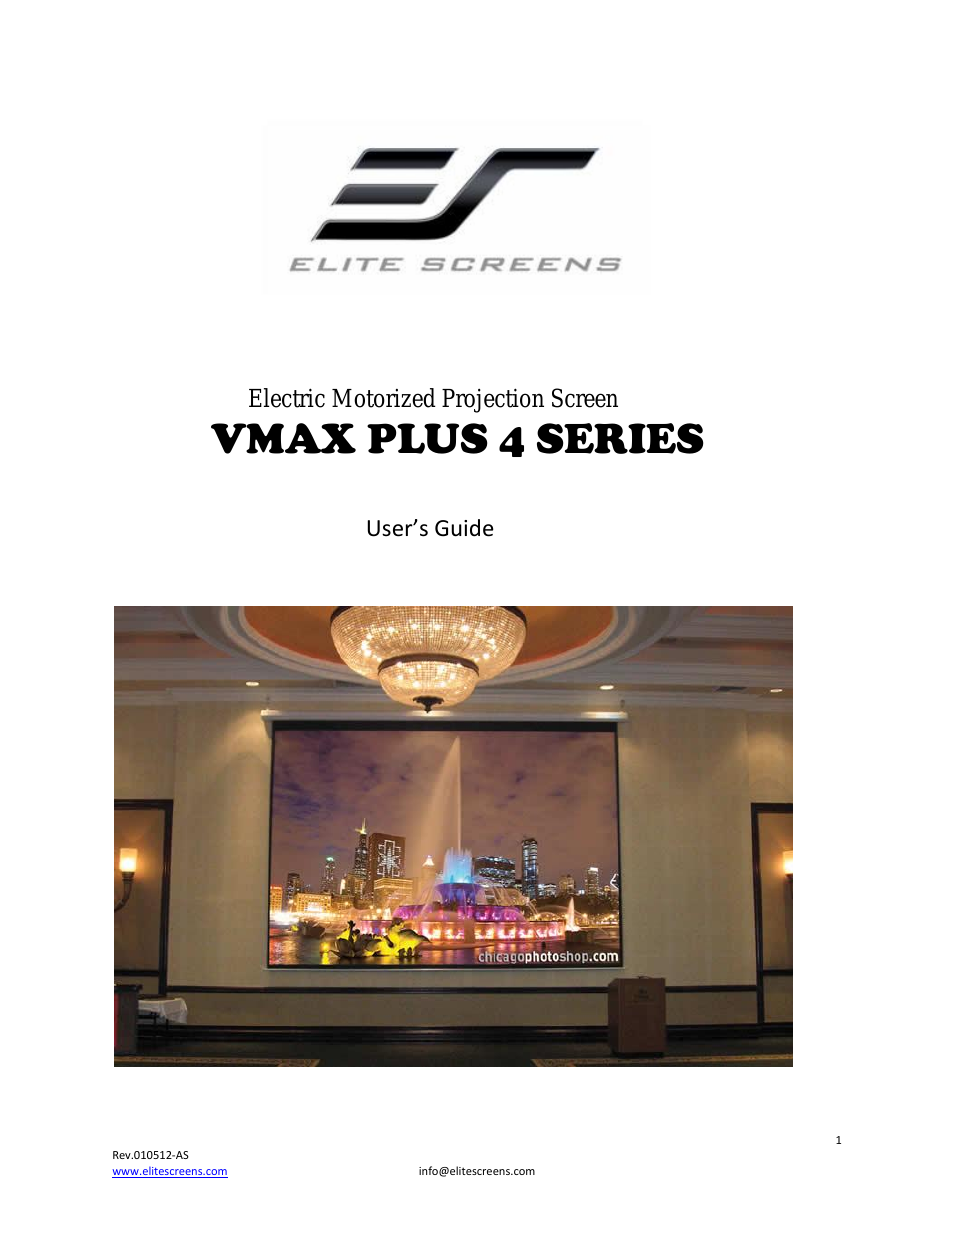 VMAX Plus Series